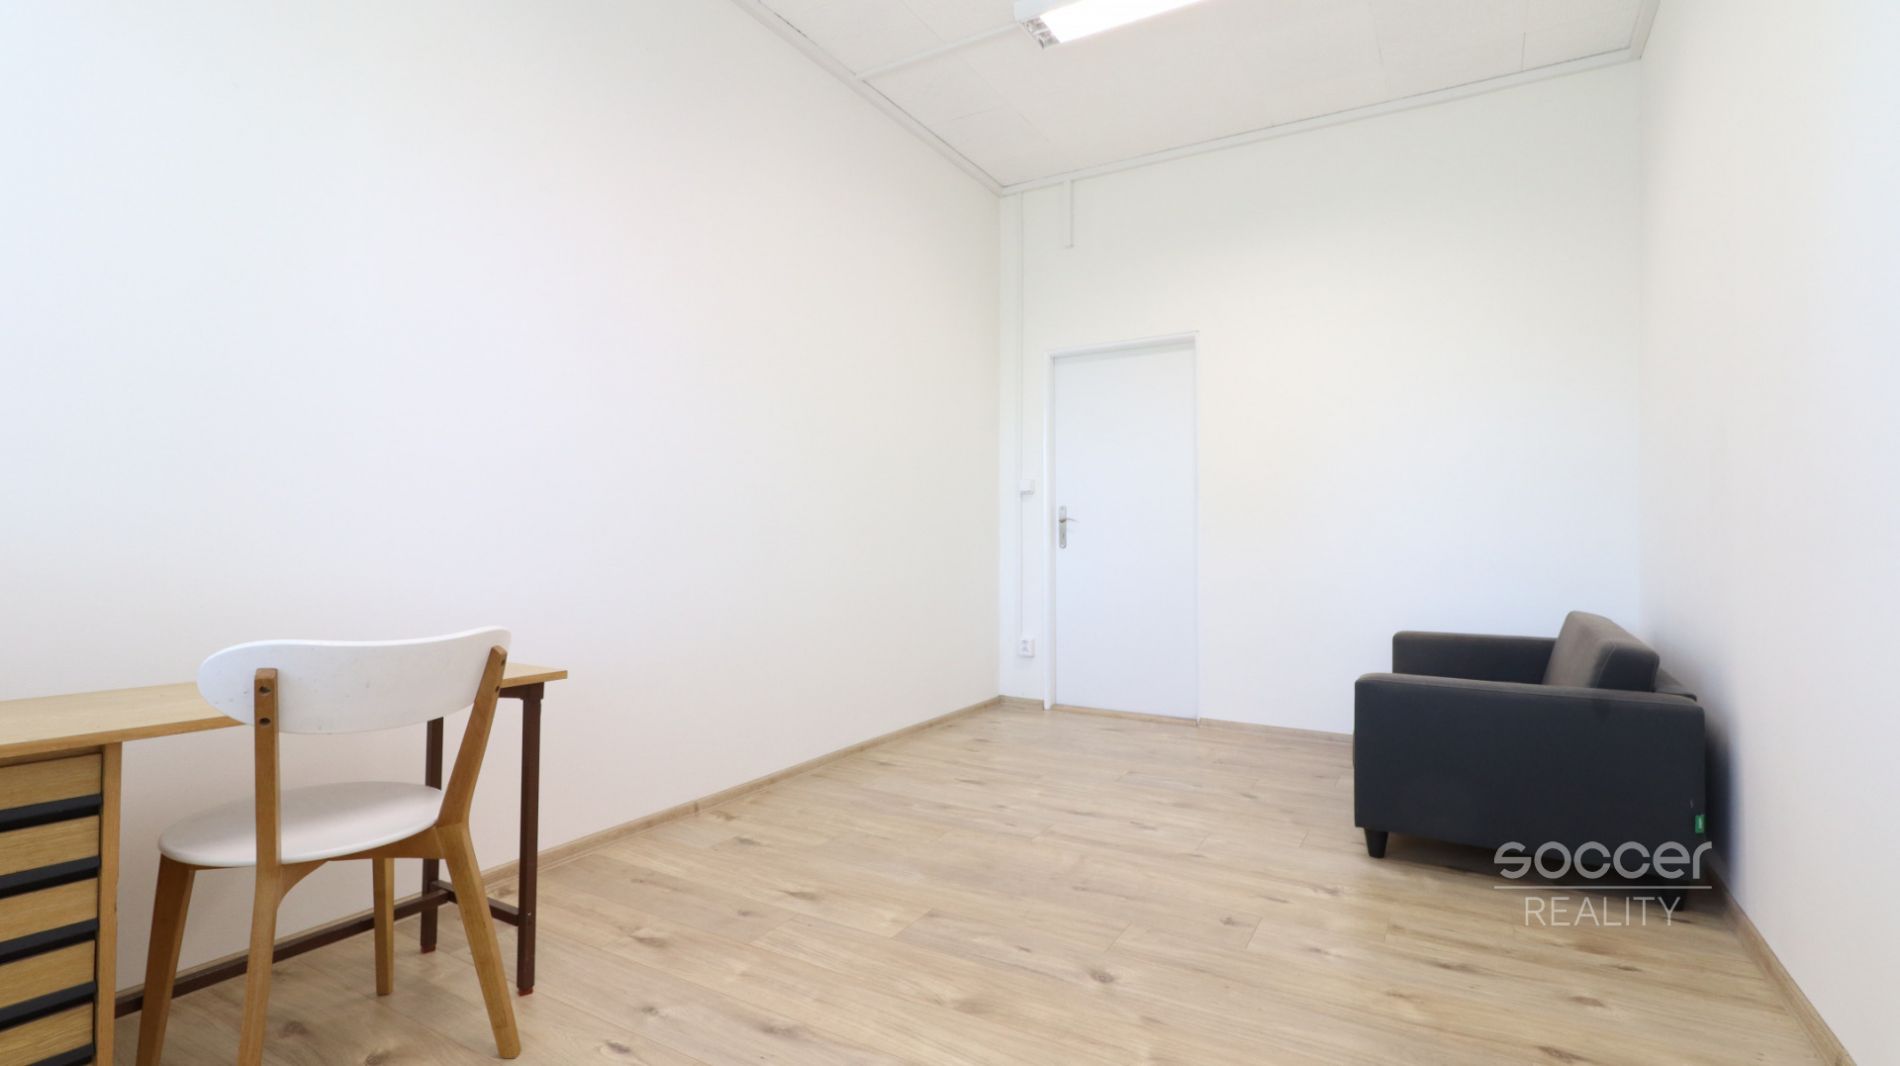 Pronájem nově zrekonstruované kanceláře, 15 m2, Praha 10 - Dolní Měcholupy, Ke Kablu